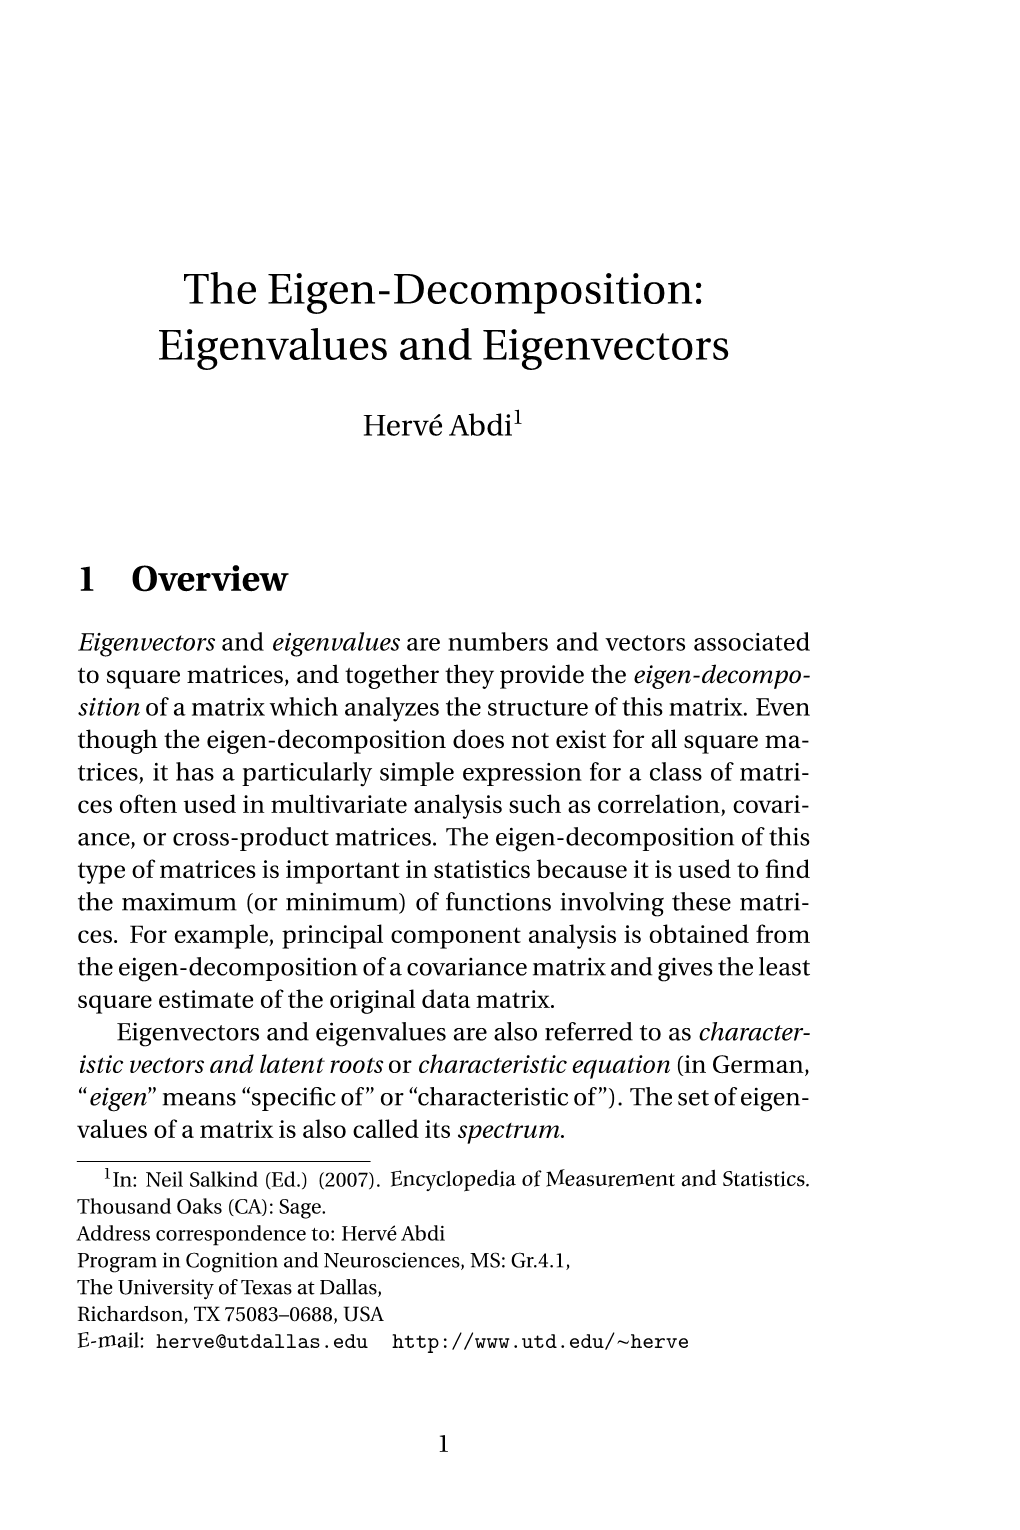 The Eigen-Decomposition: Eigenvalues and Eigenvectors